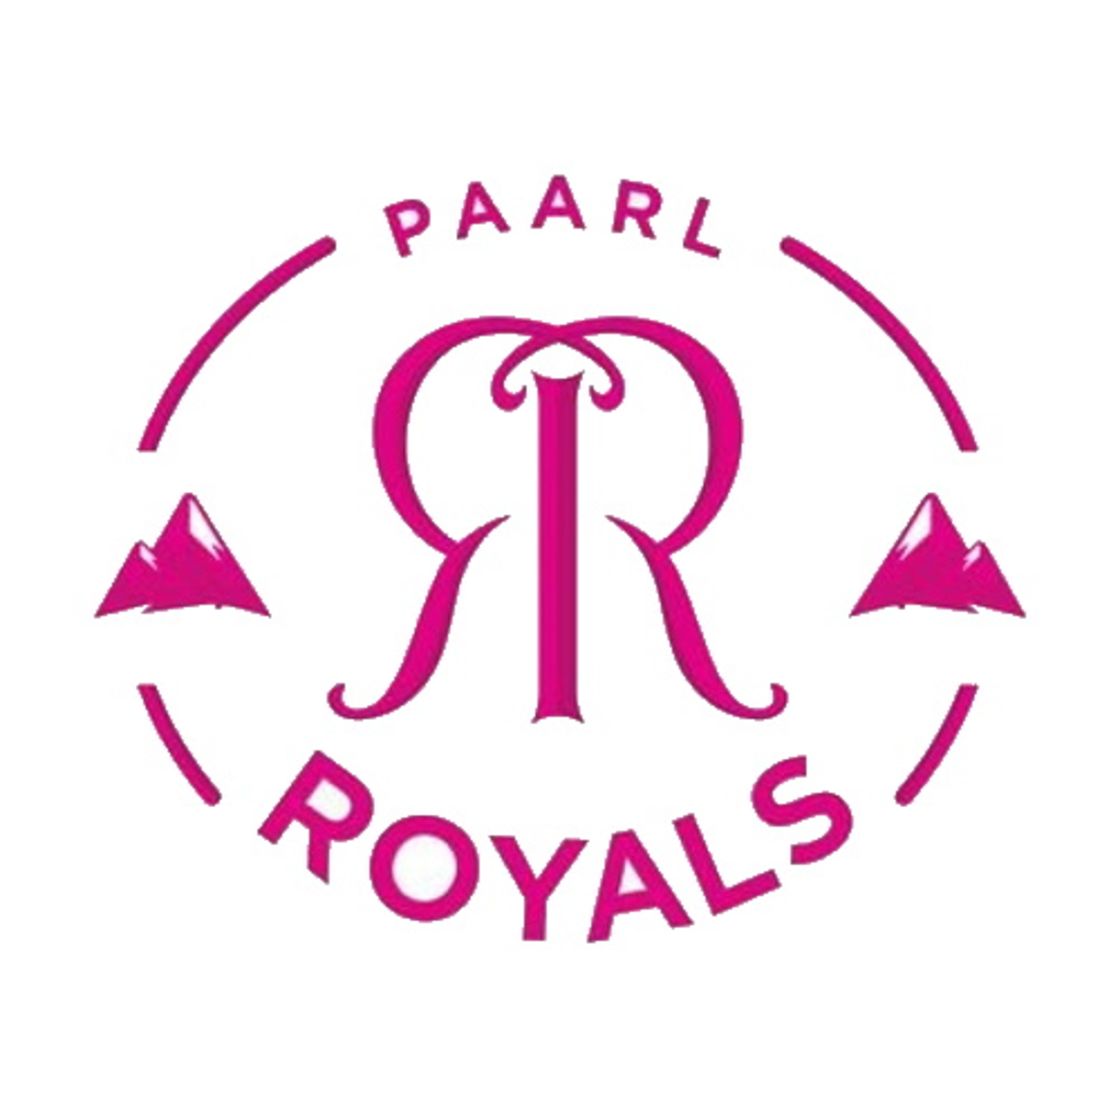 Paarl Royals team logo